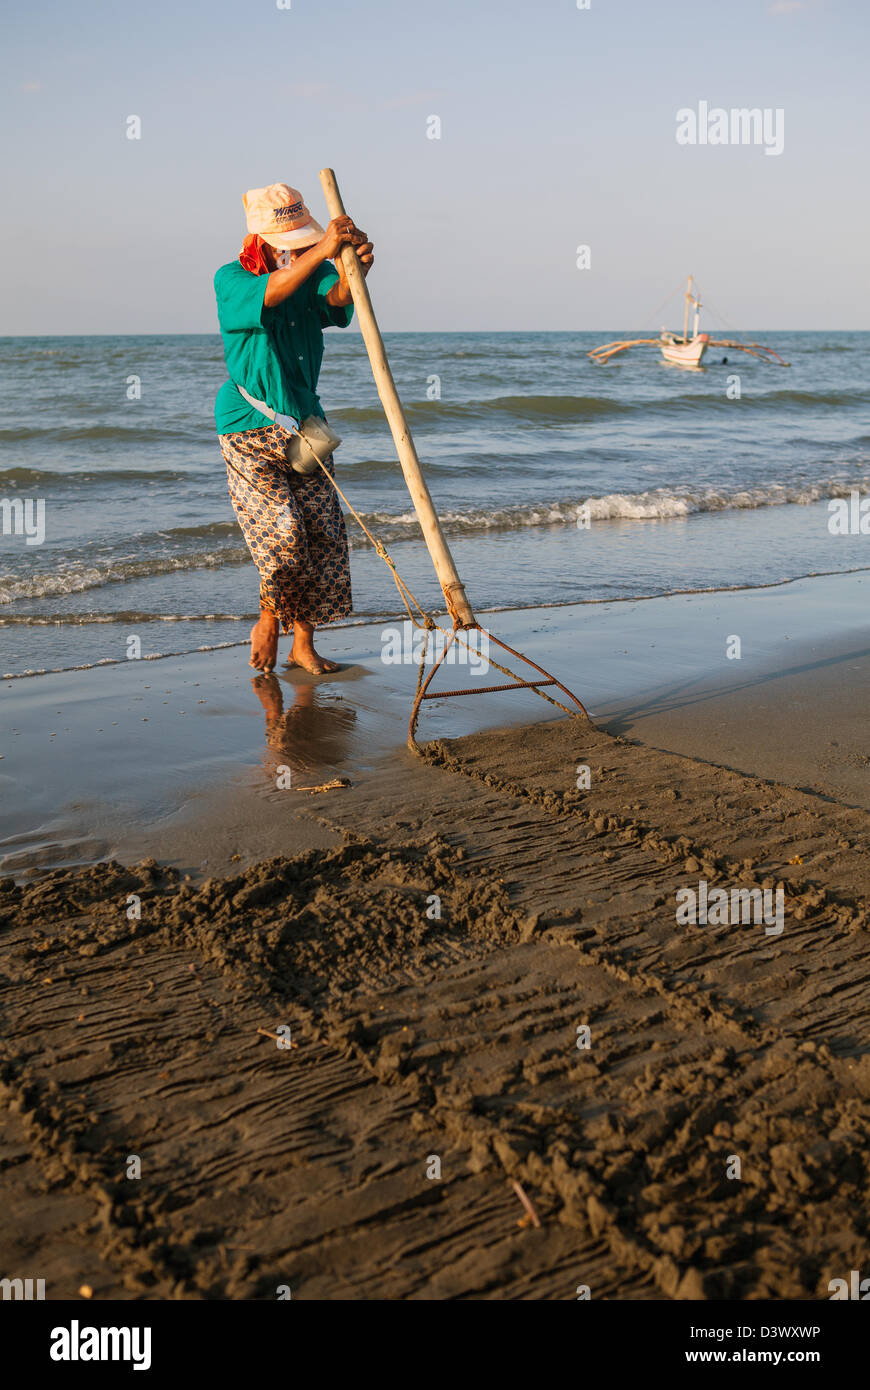 Filipino Woman Collecting Shellfish at Baybay Beach, Panay Island, Philippines. Stock Photo